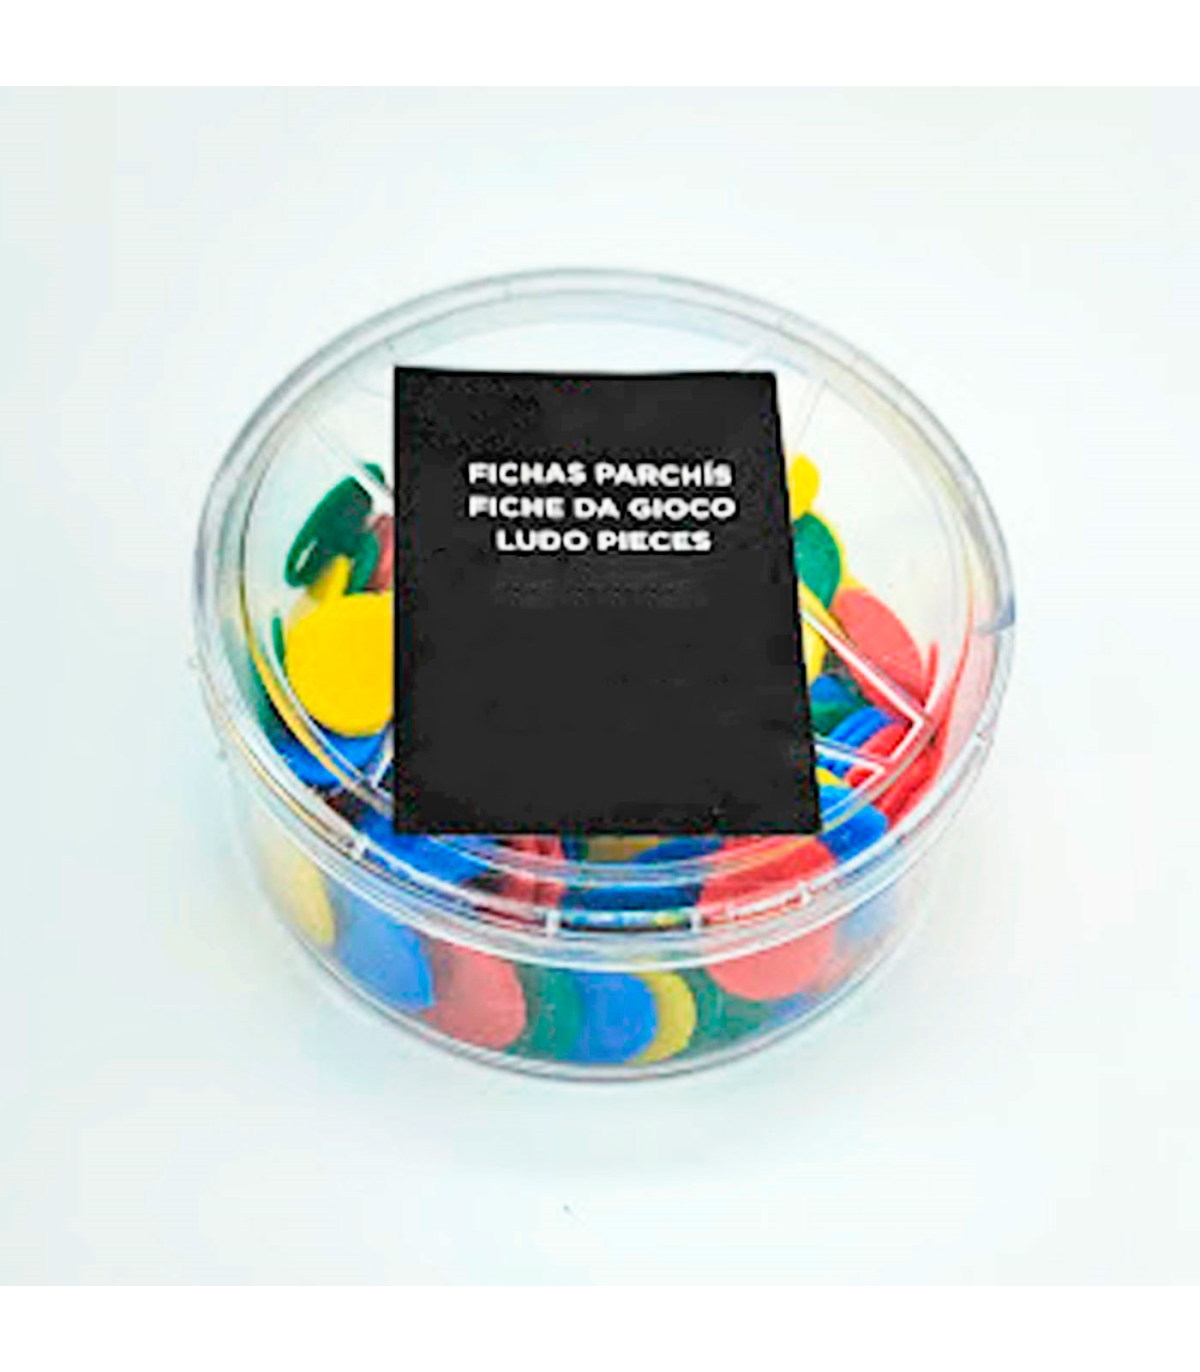 Caja 100 Fichas Parchís - 4 colores